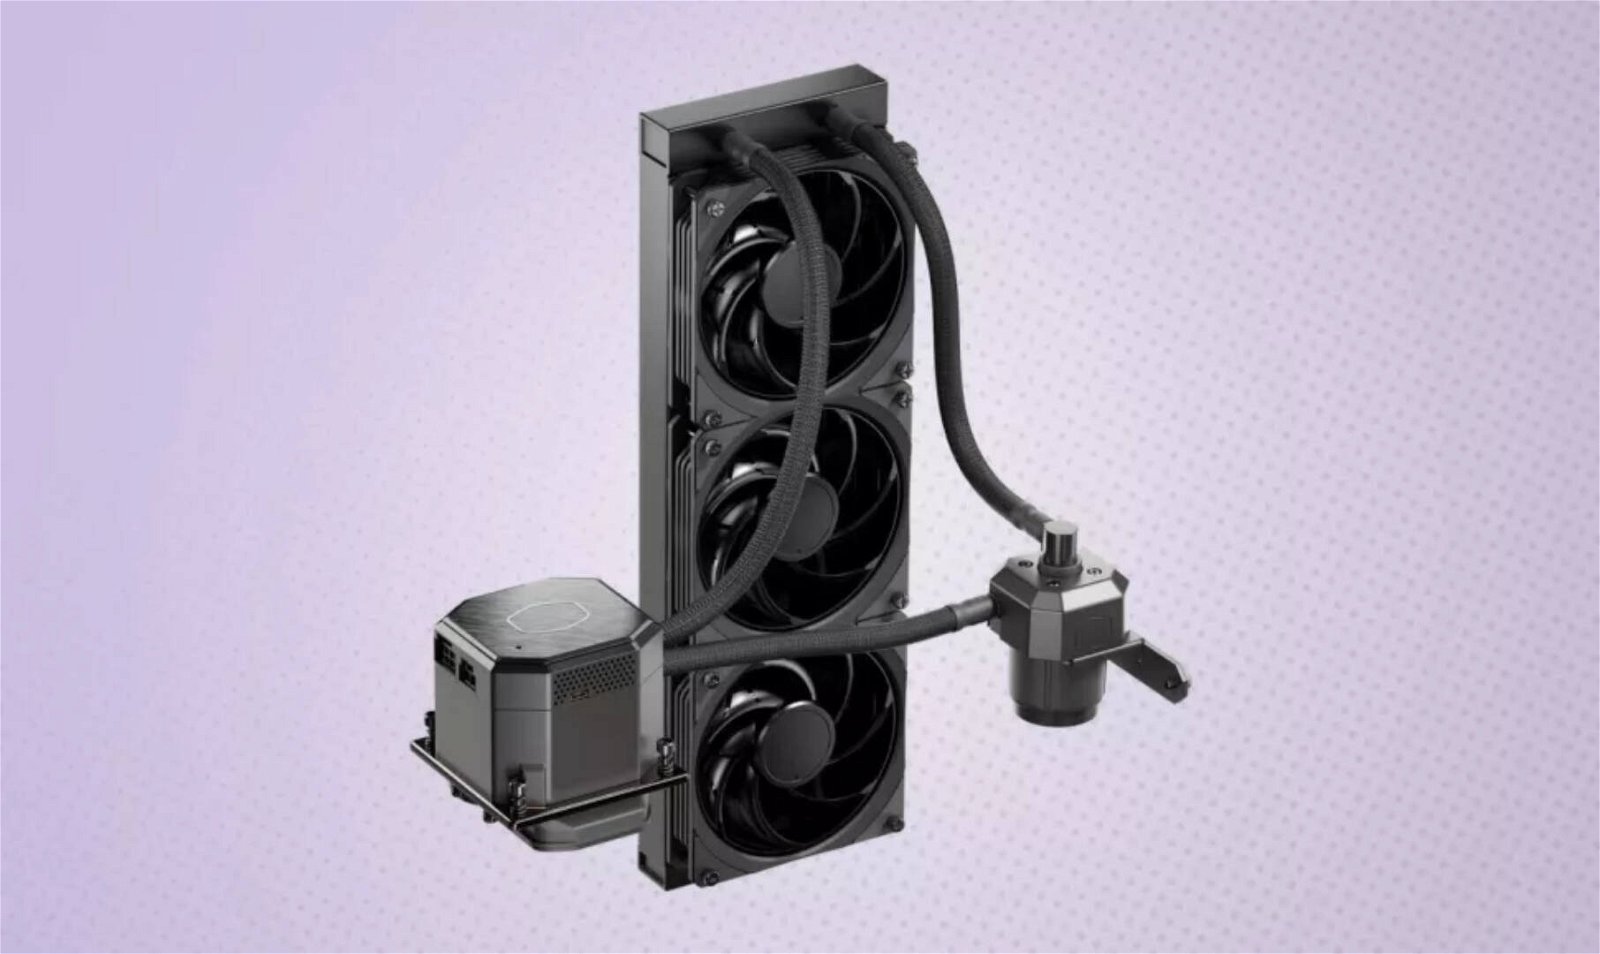 Immagine di Cooler Master, presto in vendita il sistema di raffreddamento AIO ML360 Sub-Zero